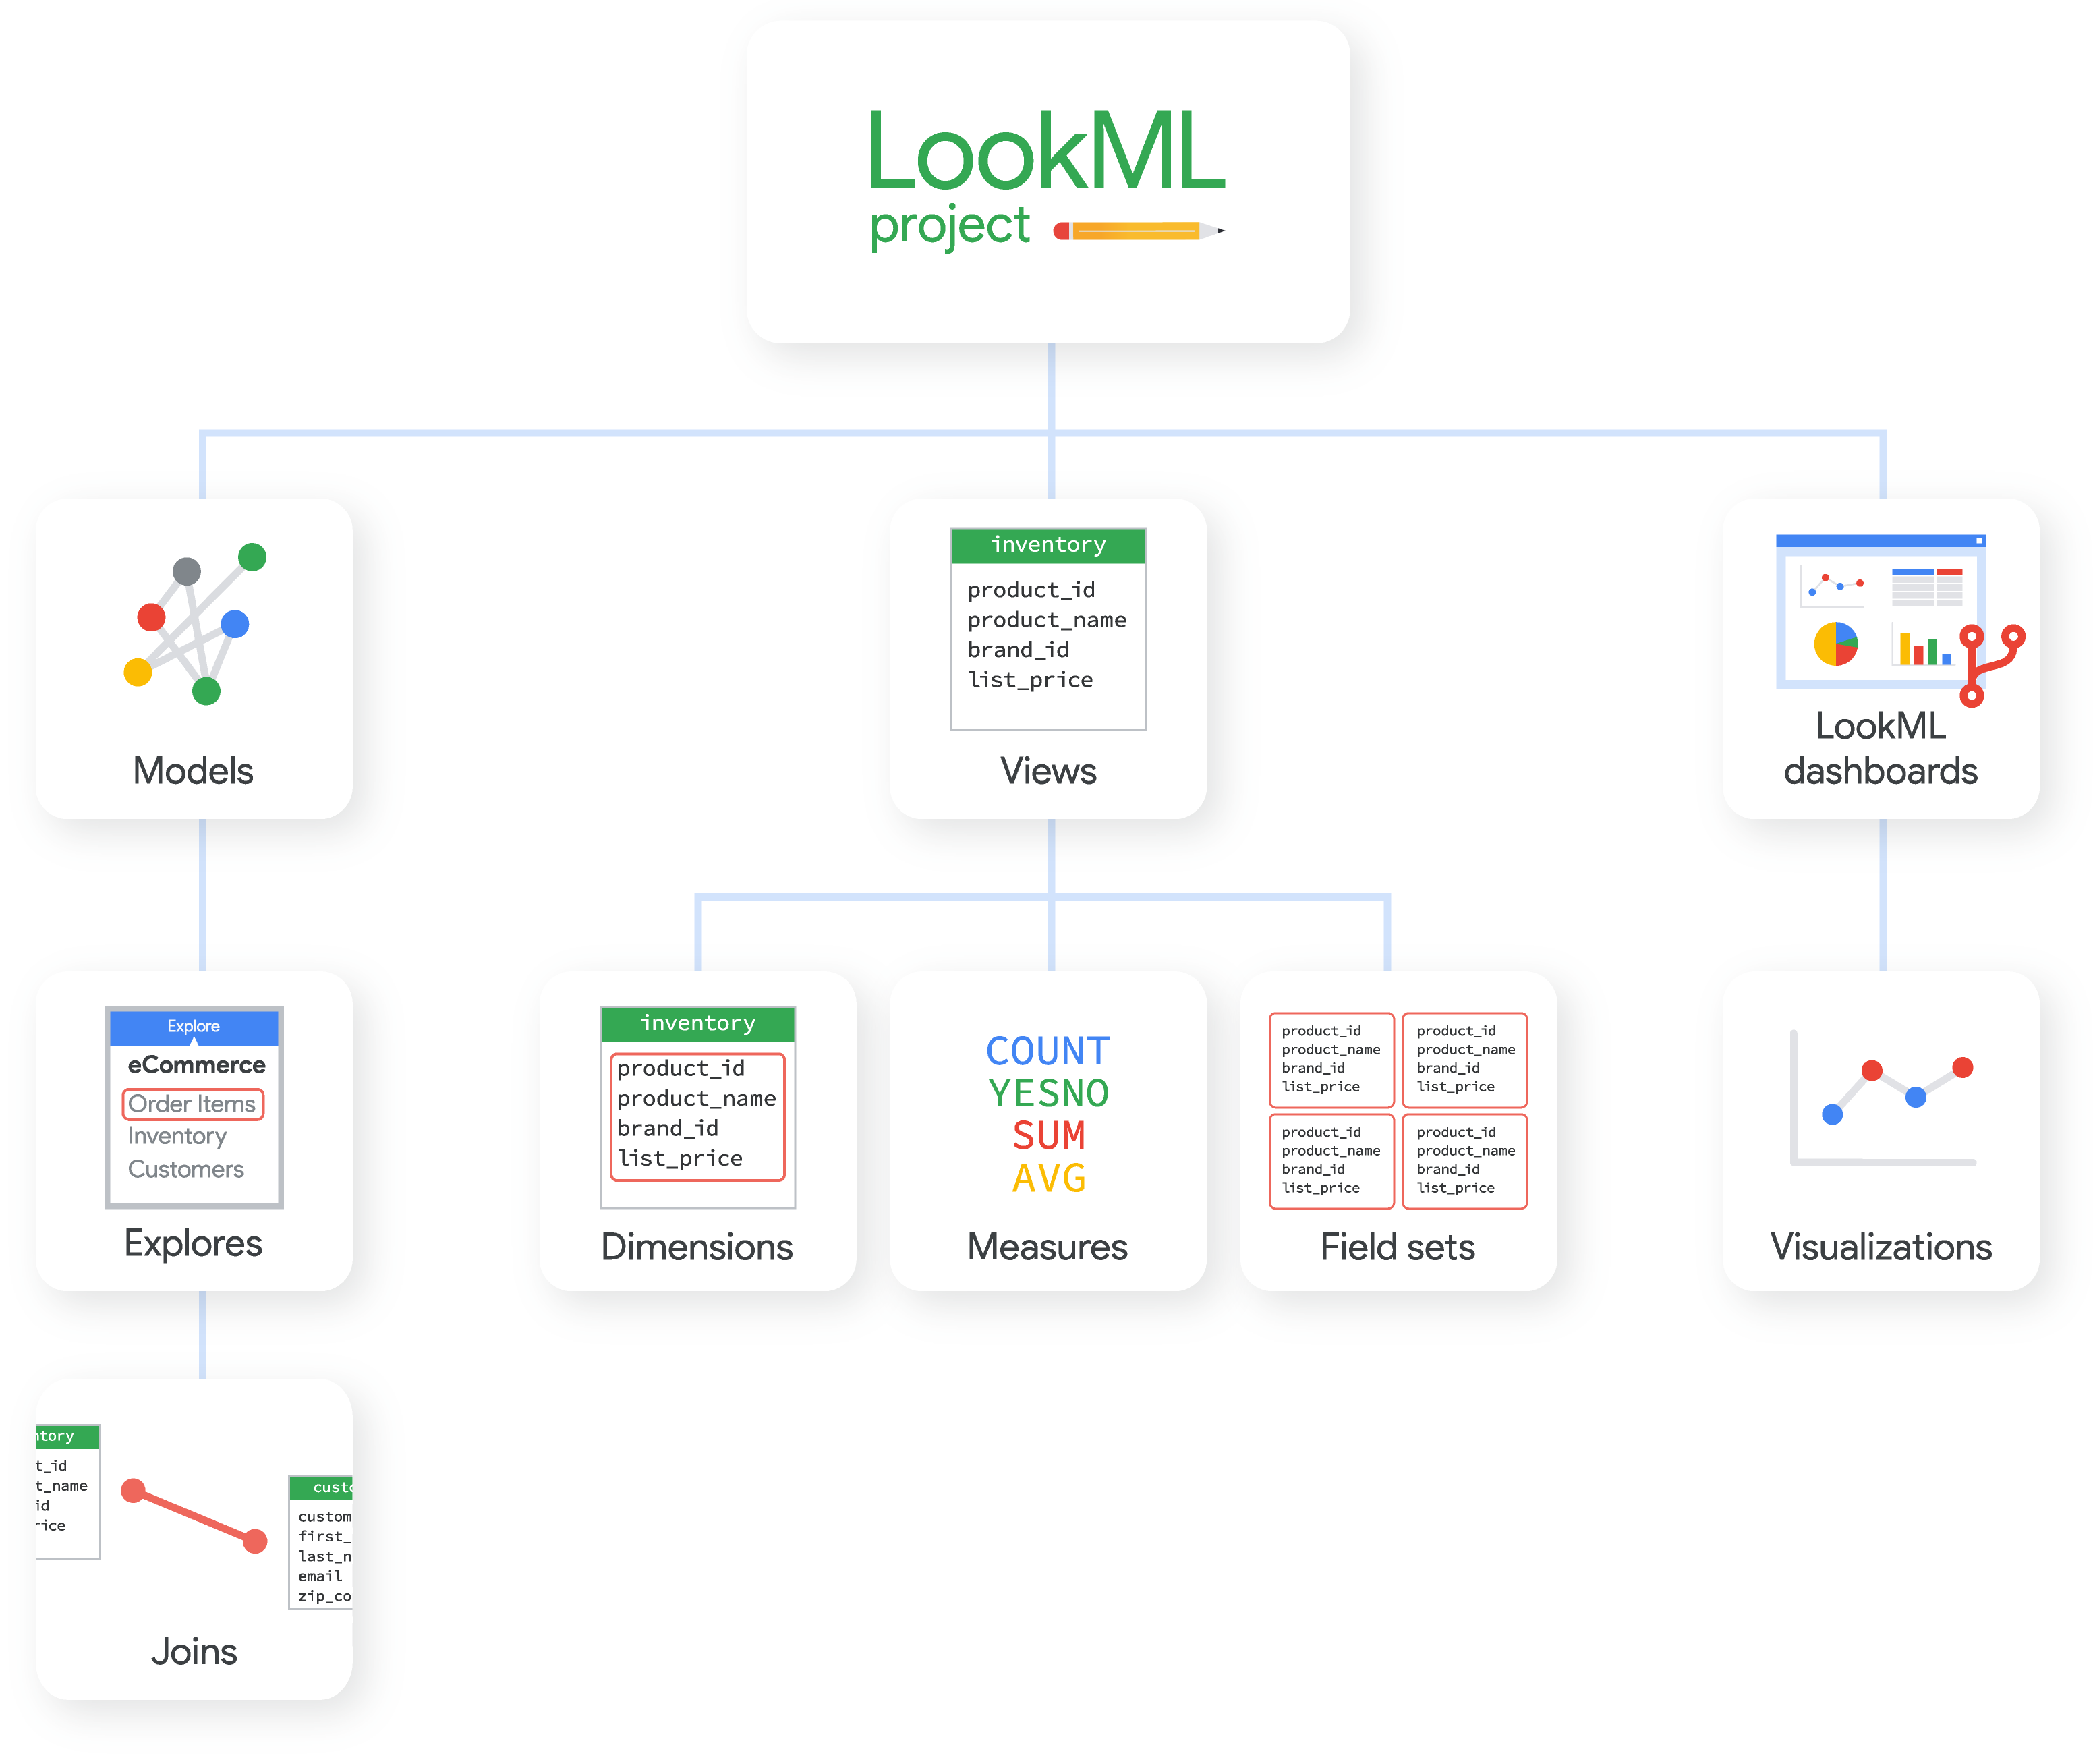 Ein LookML-Projekt kann Modelle, Ansichten und LookML-Dashboards enthalten, von denen jedes aus anderen LookML-Elementen besteht.